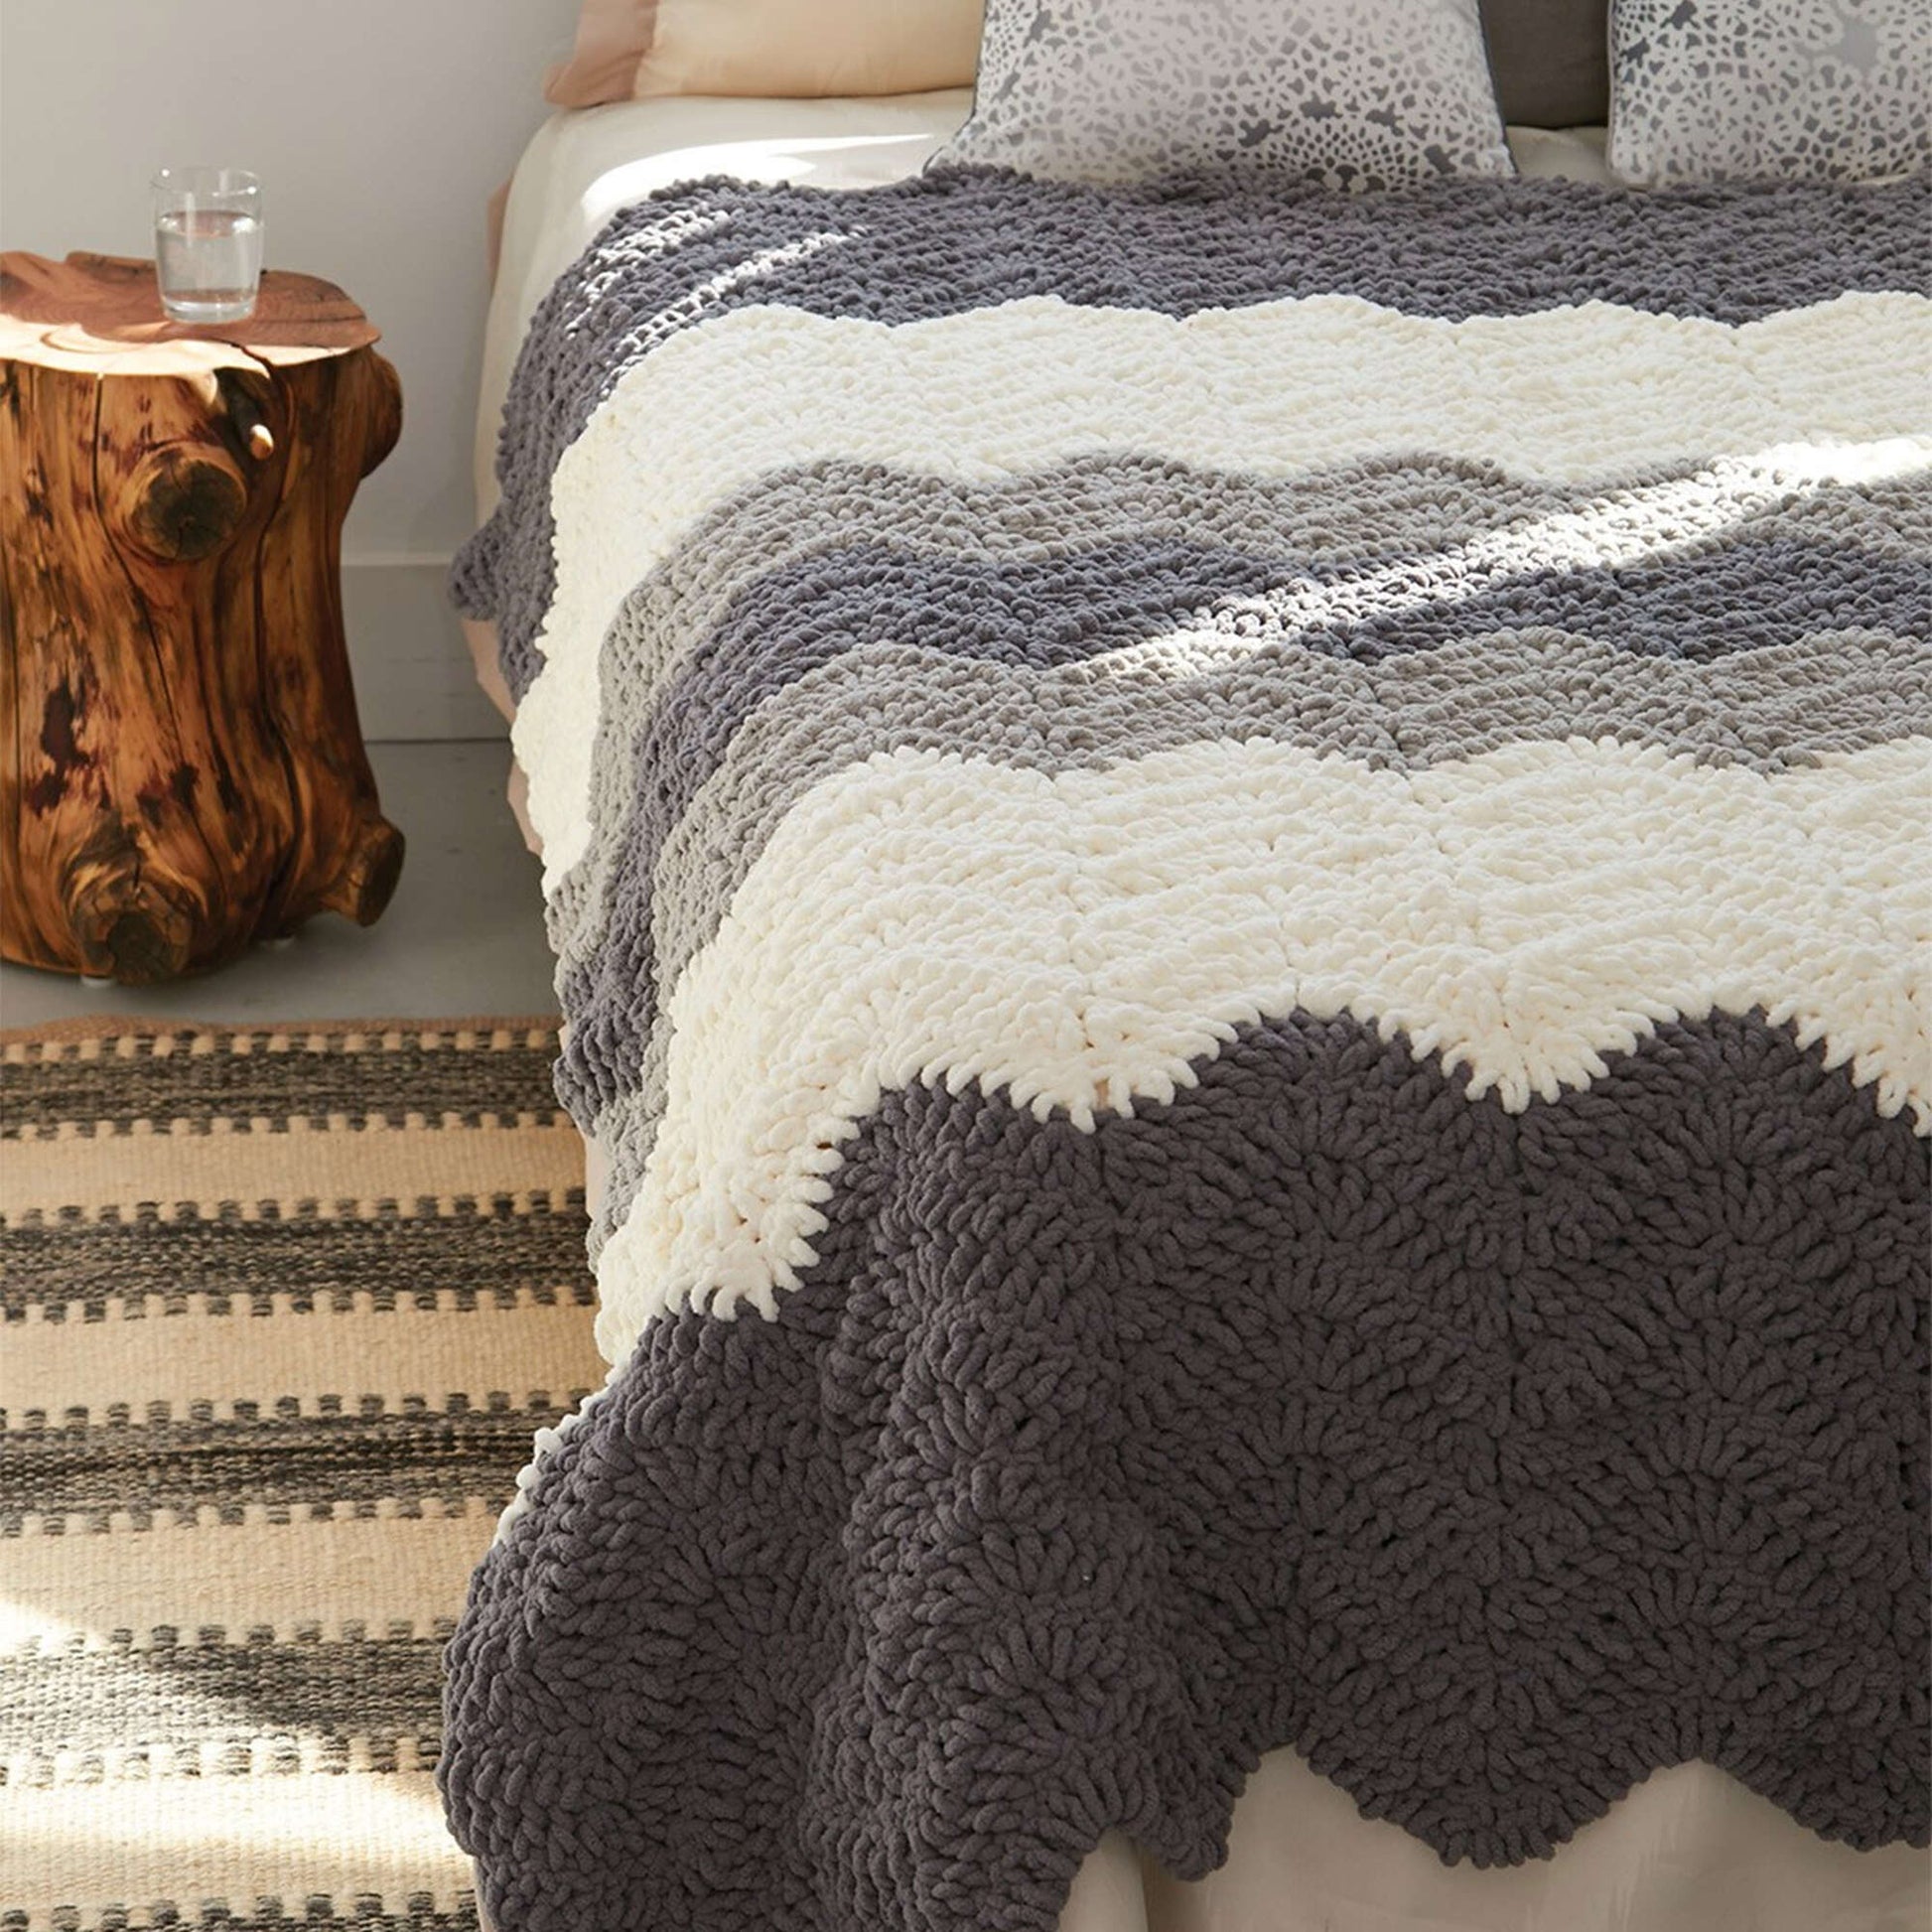 Bernat Grey Scale Crochet Blanket Crochet Blanket made in Bernat Blanket yarn